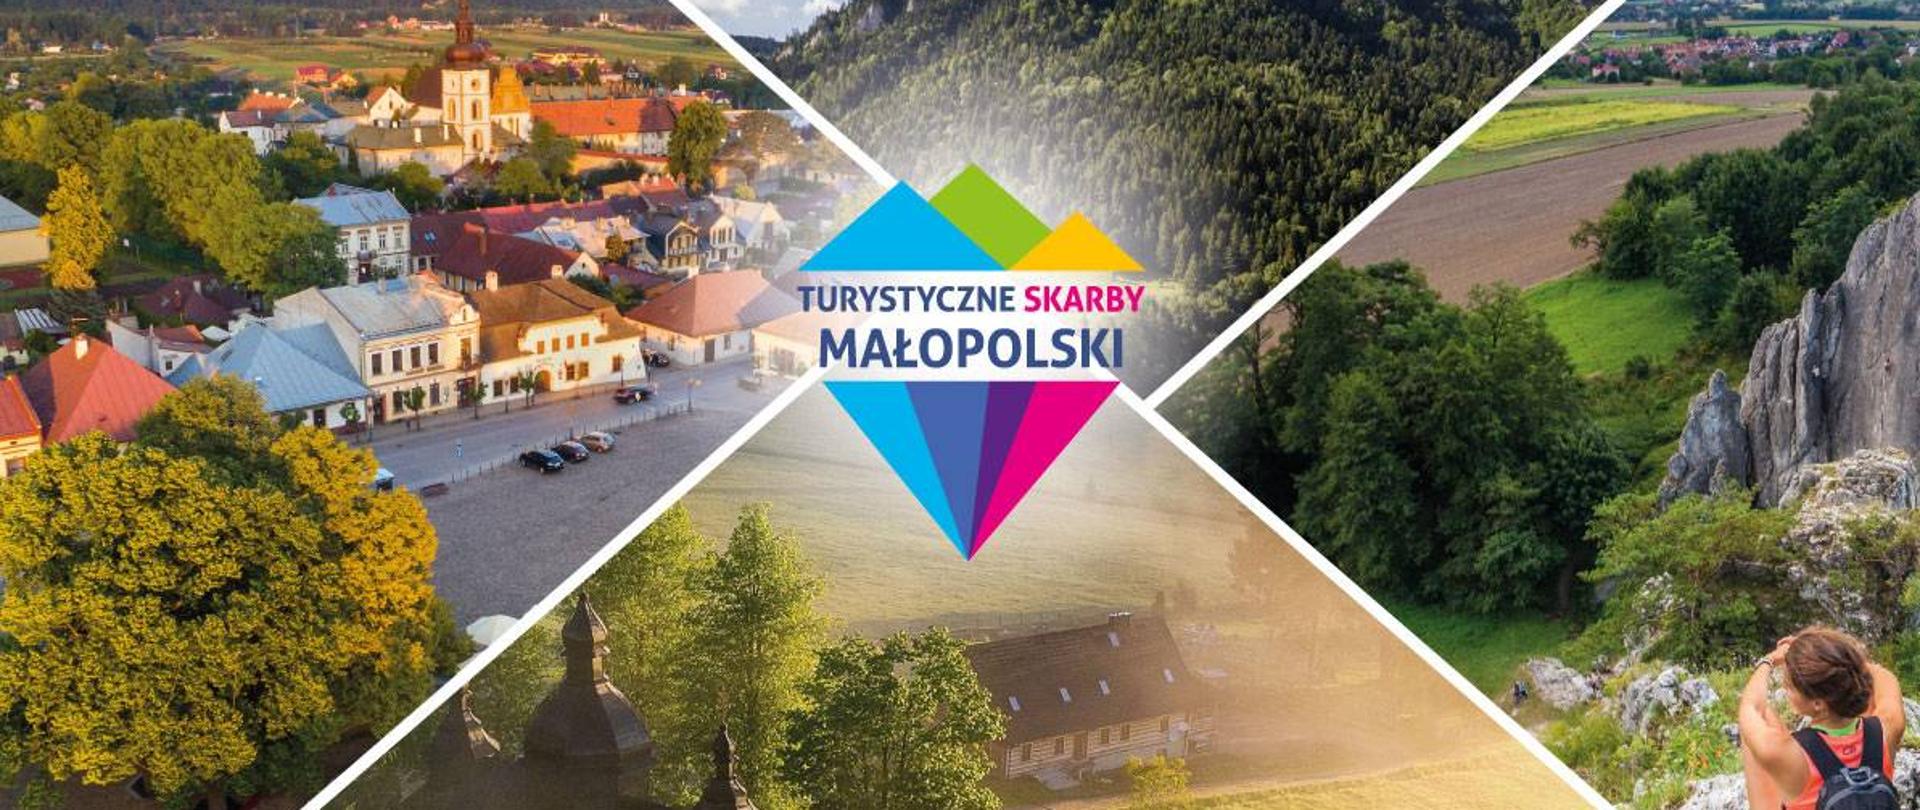 zdjęcie przedstawia kolaż zdjęć przedstawiających miejsca z terenu małopolski, na środku znajduje się logo i napis TURYSTYCZNE SKARBY MAŁOPOLSKI.